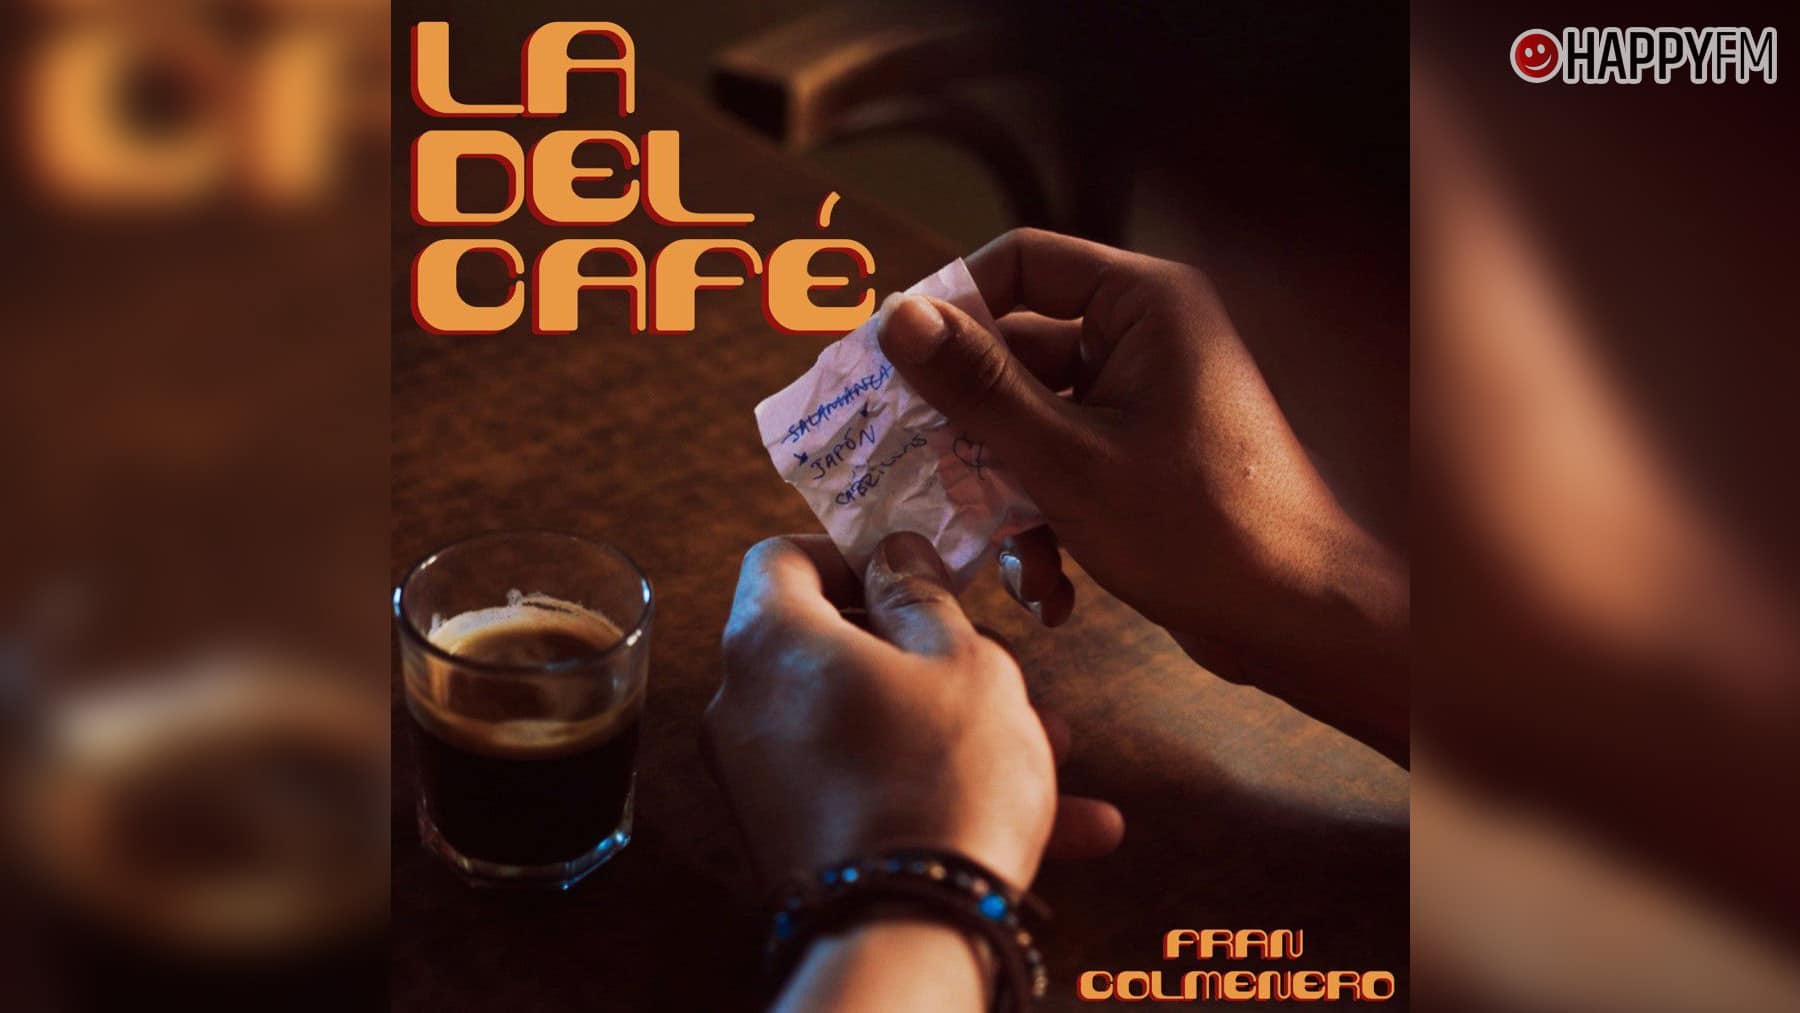 ‘La del Café’, de Fran Colmenero: letra y vídeo